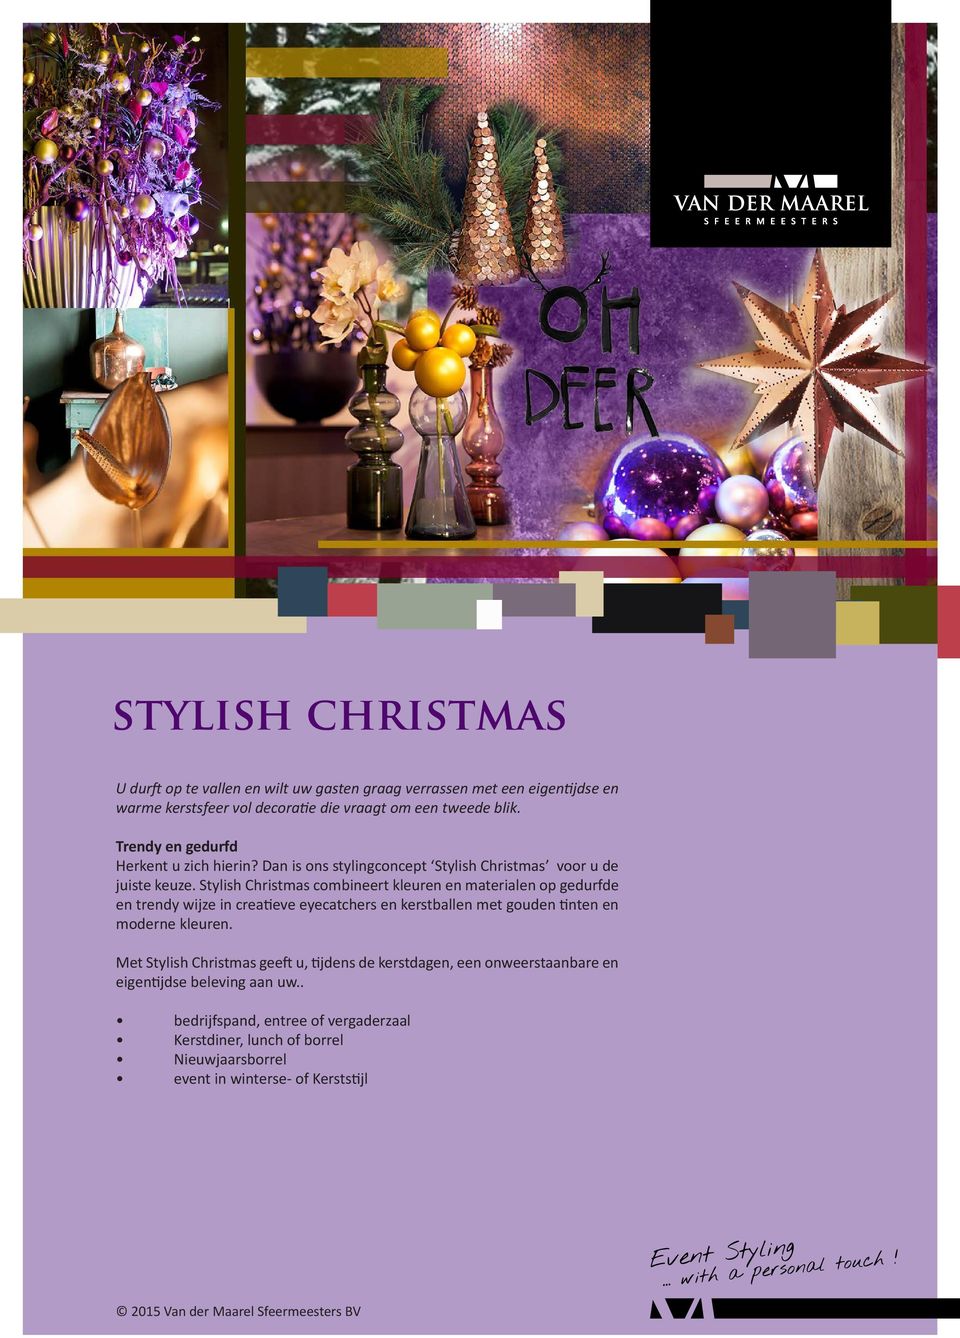 Stylish Christmas combineert kleuren en materialen op gedurfde en trendy wijze in creatieve eyecatchers en kerstballen met gouden tinten en moderne kleuren.